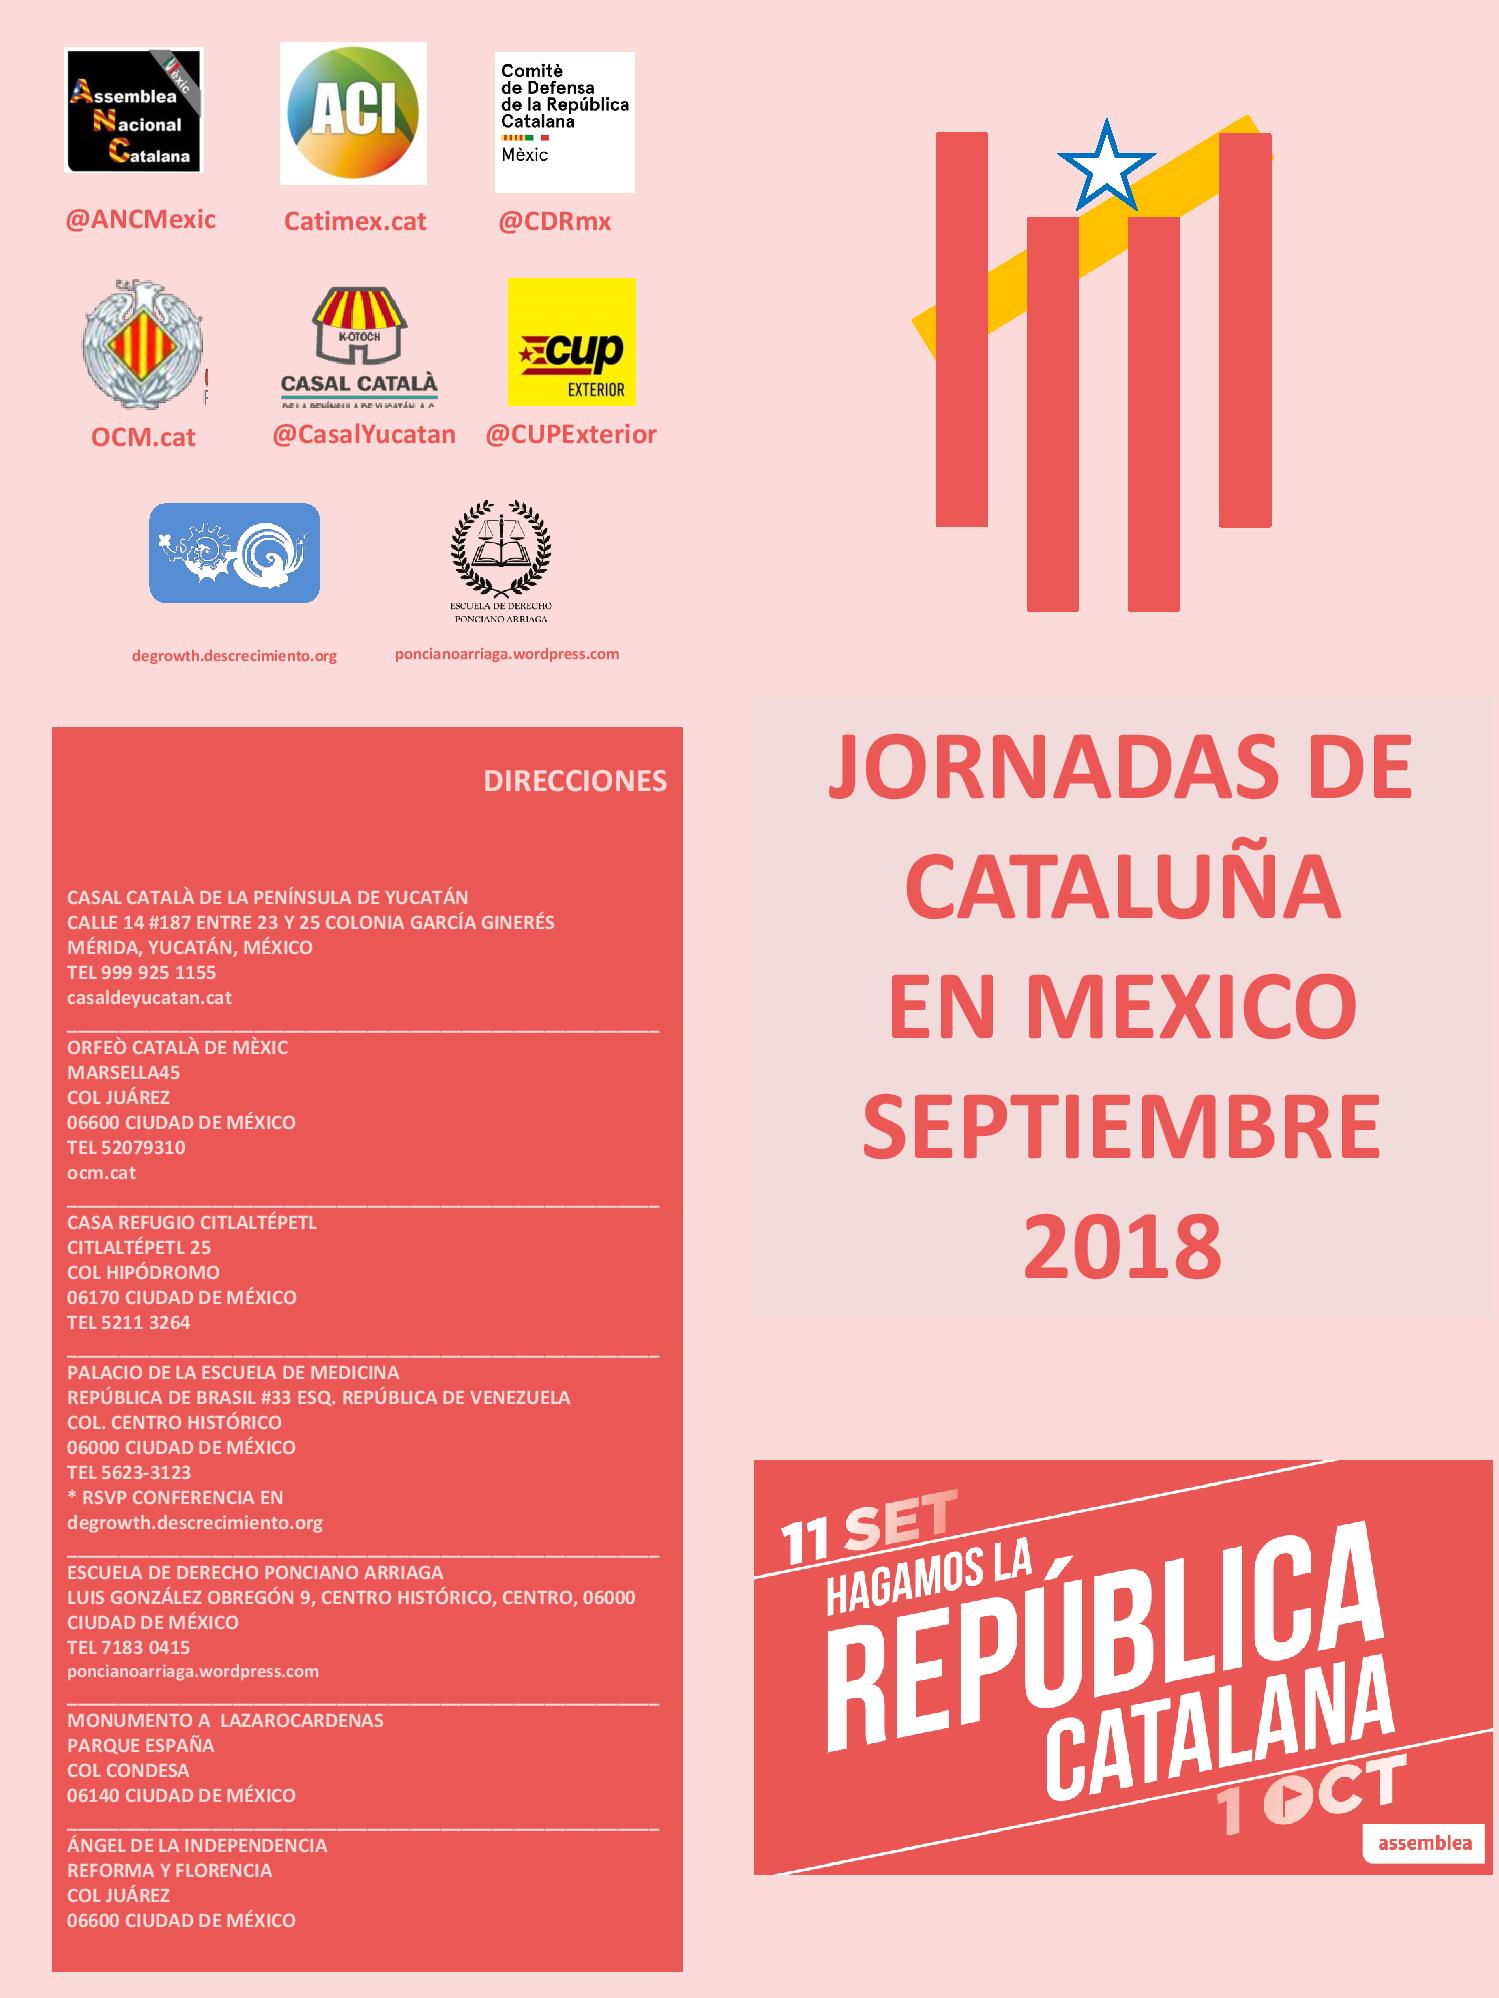 Coloquio: La exigencia de justicia en México y Cataluña. Un diálogo entre movimientos sociales